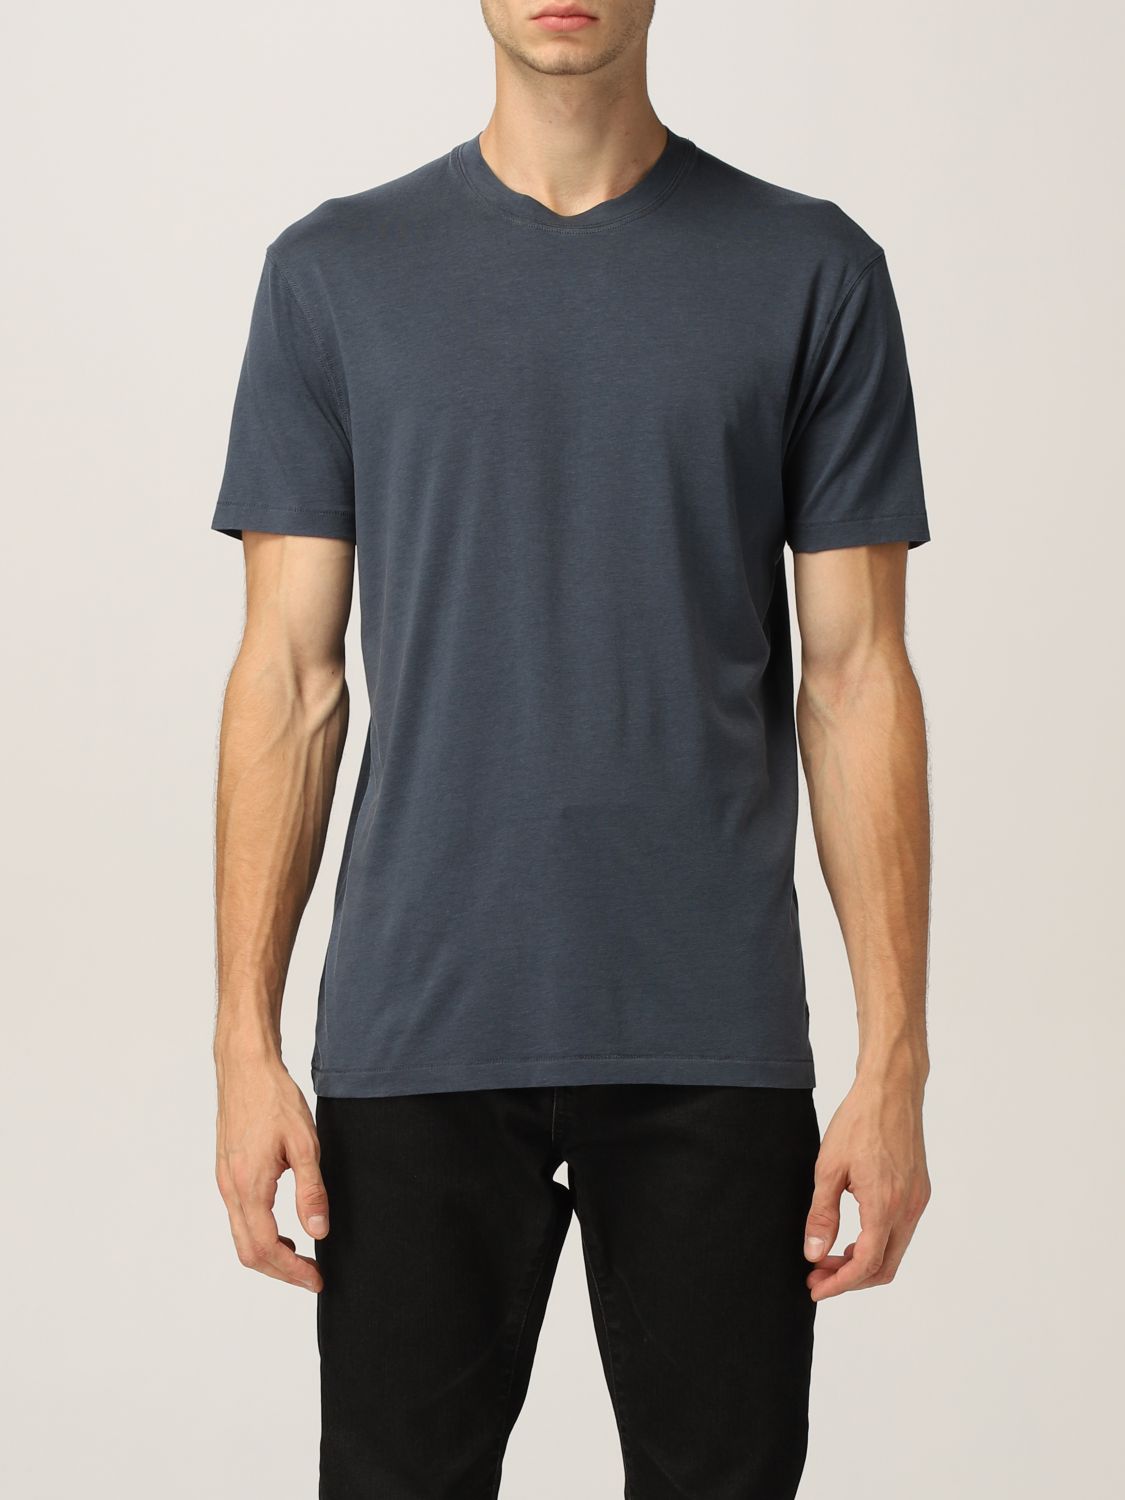 Camiseta Tom Ford: Camiseta hombre Tom Ford azul oscuro 1